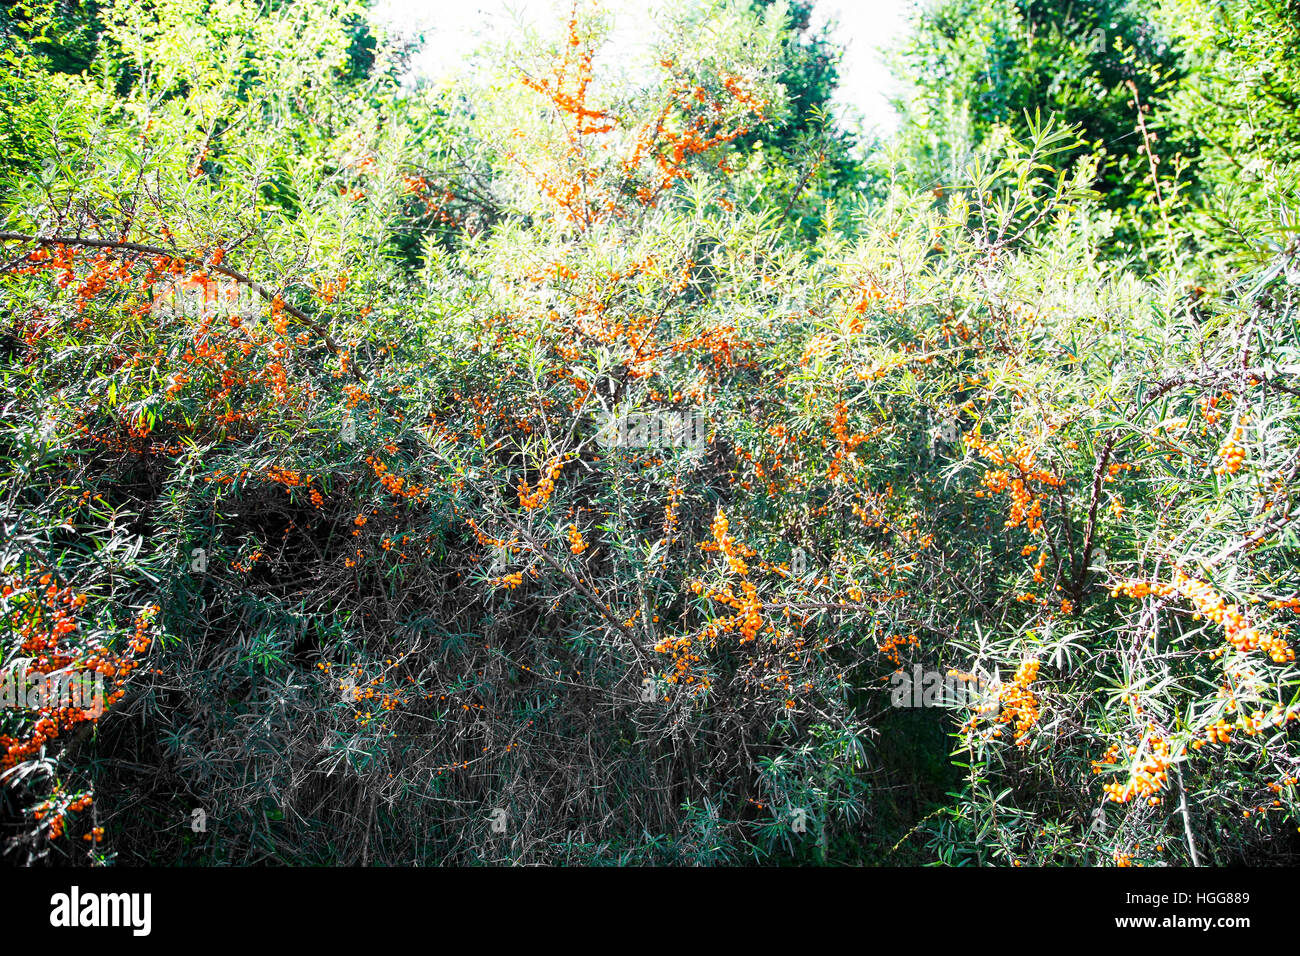 Seabuckthorn bush full of orange seabuckthorn fruits Stock Photo